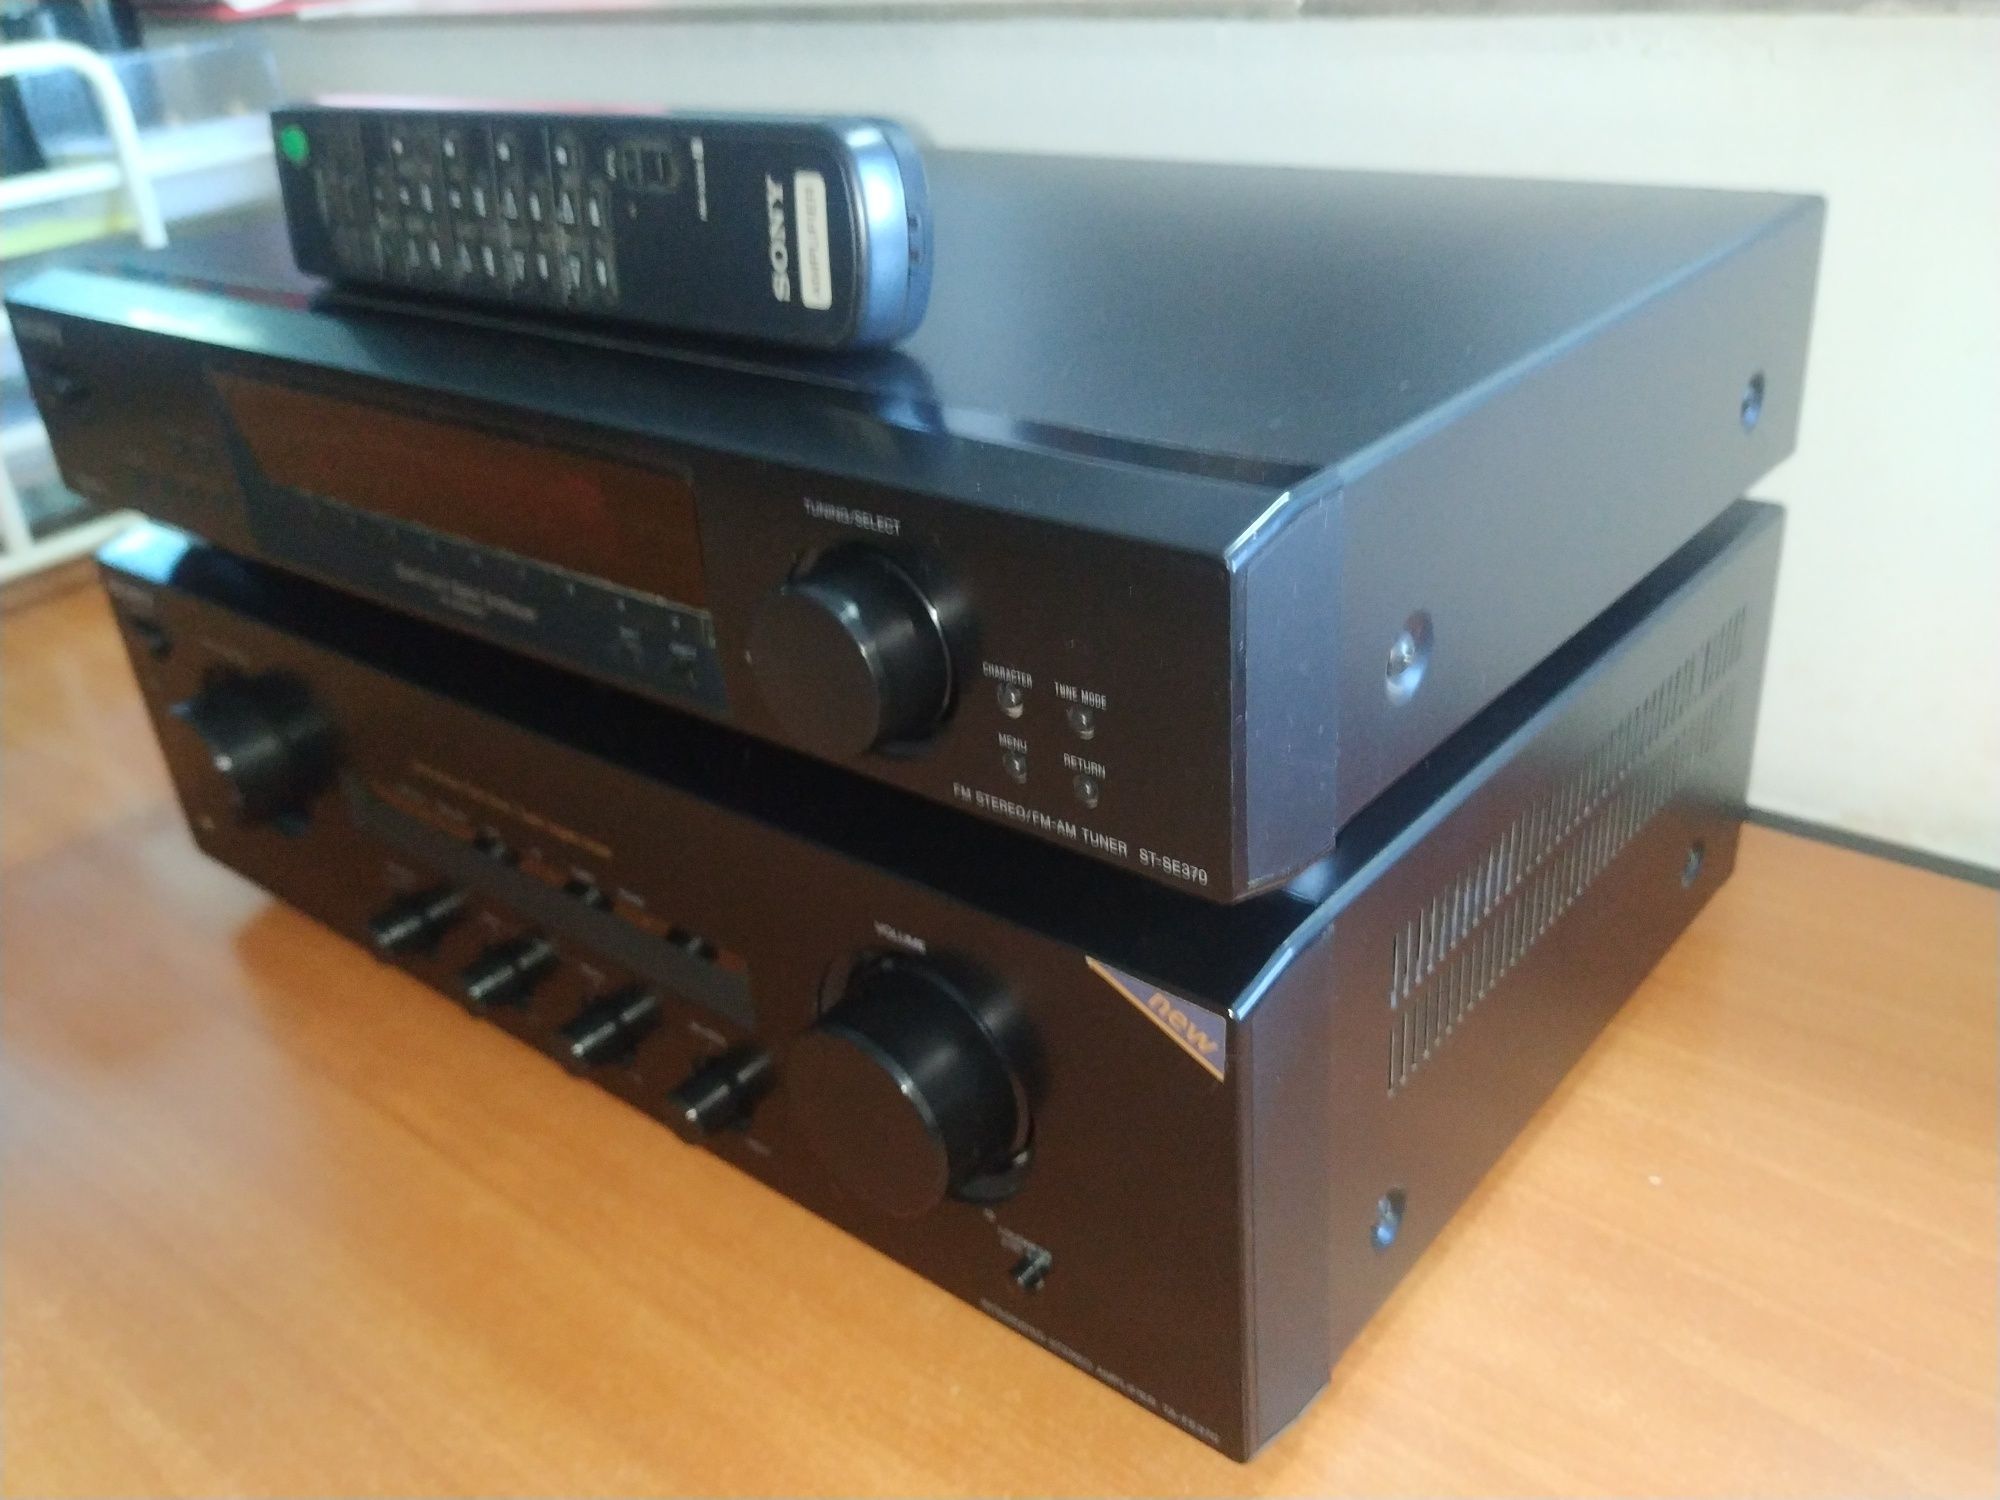 Amplificator + tuner Sony, cu telecomanda de sistem